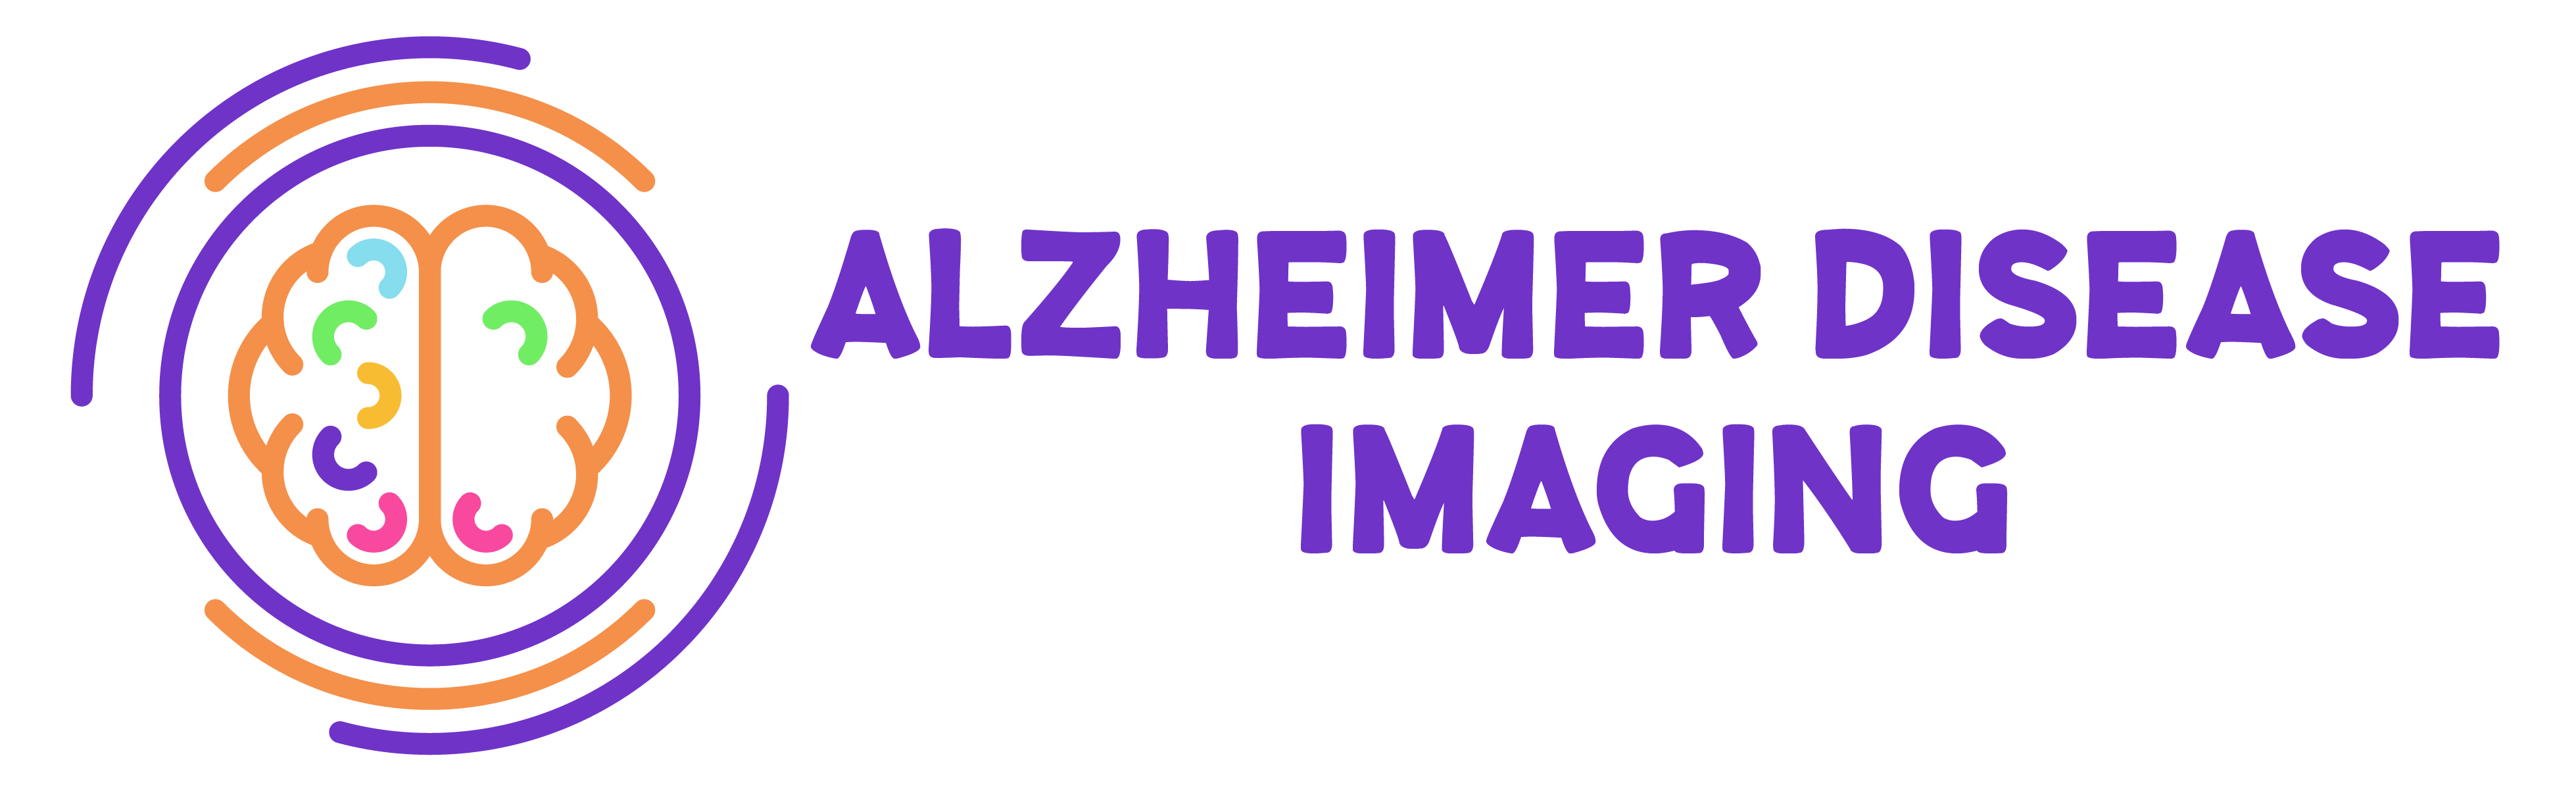 Alzheimer Disease Imaging Delaware